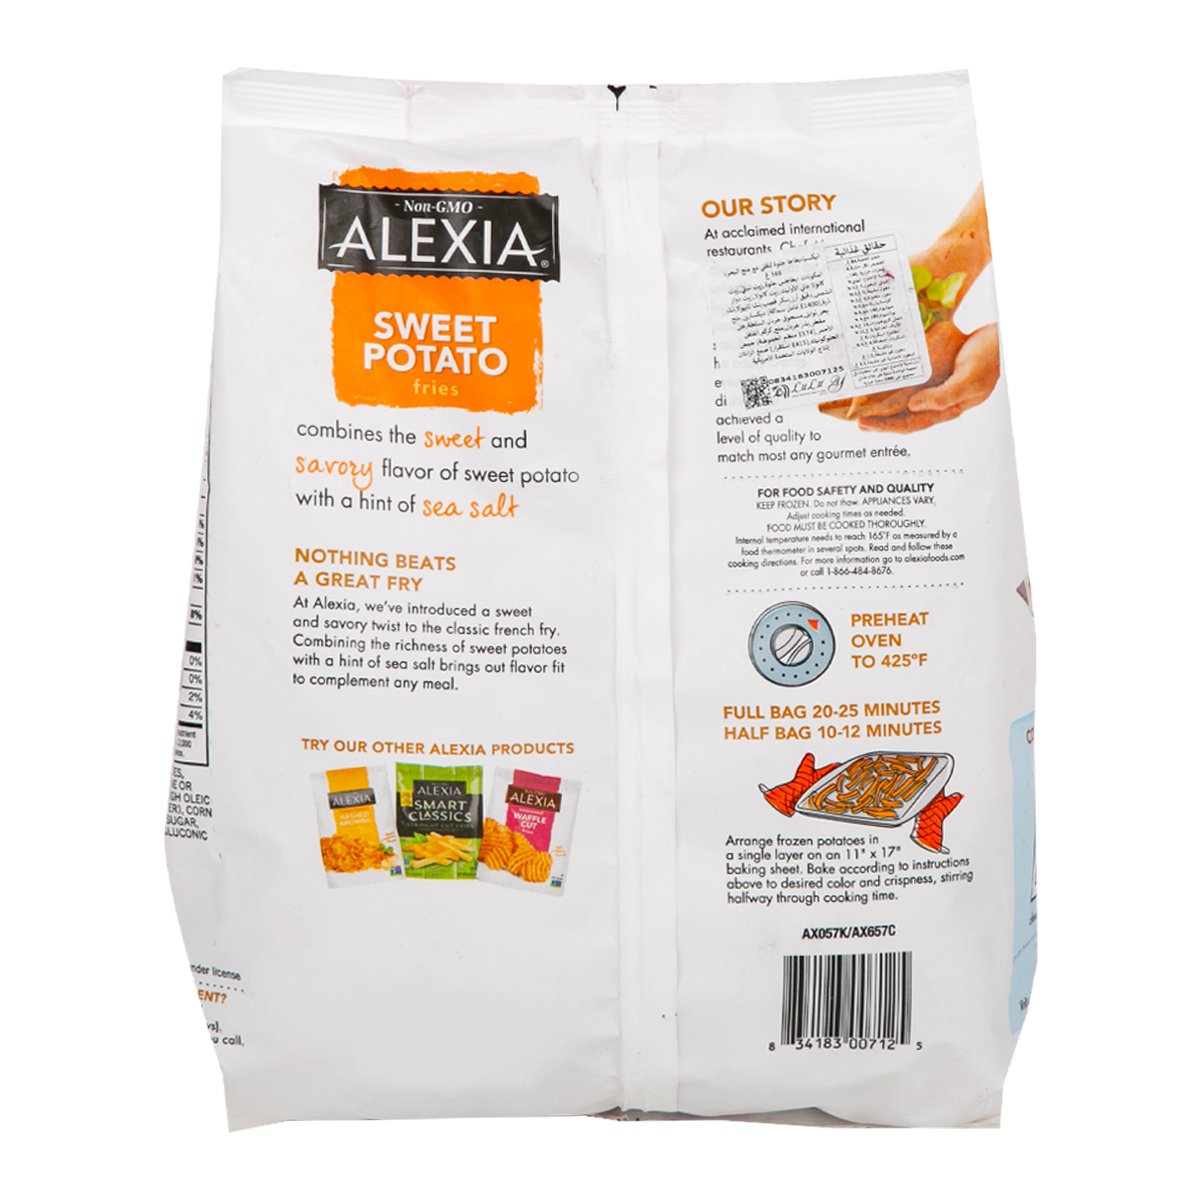 Alexia Sweet Potato Fries with Sea Salt 566 g